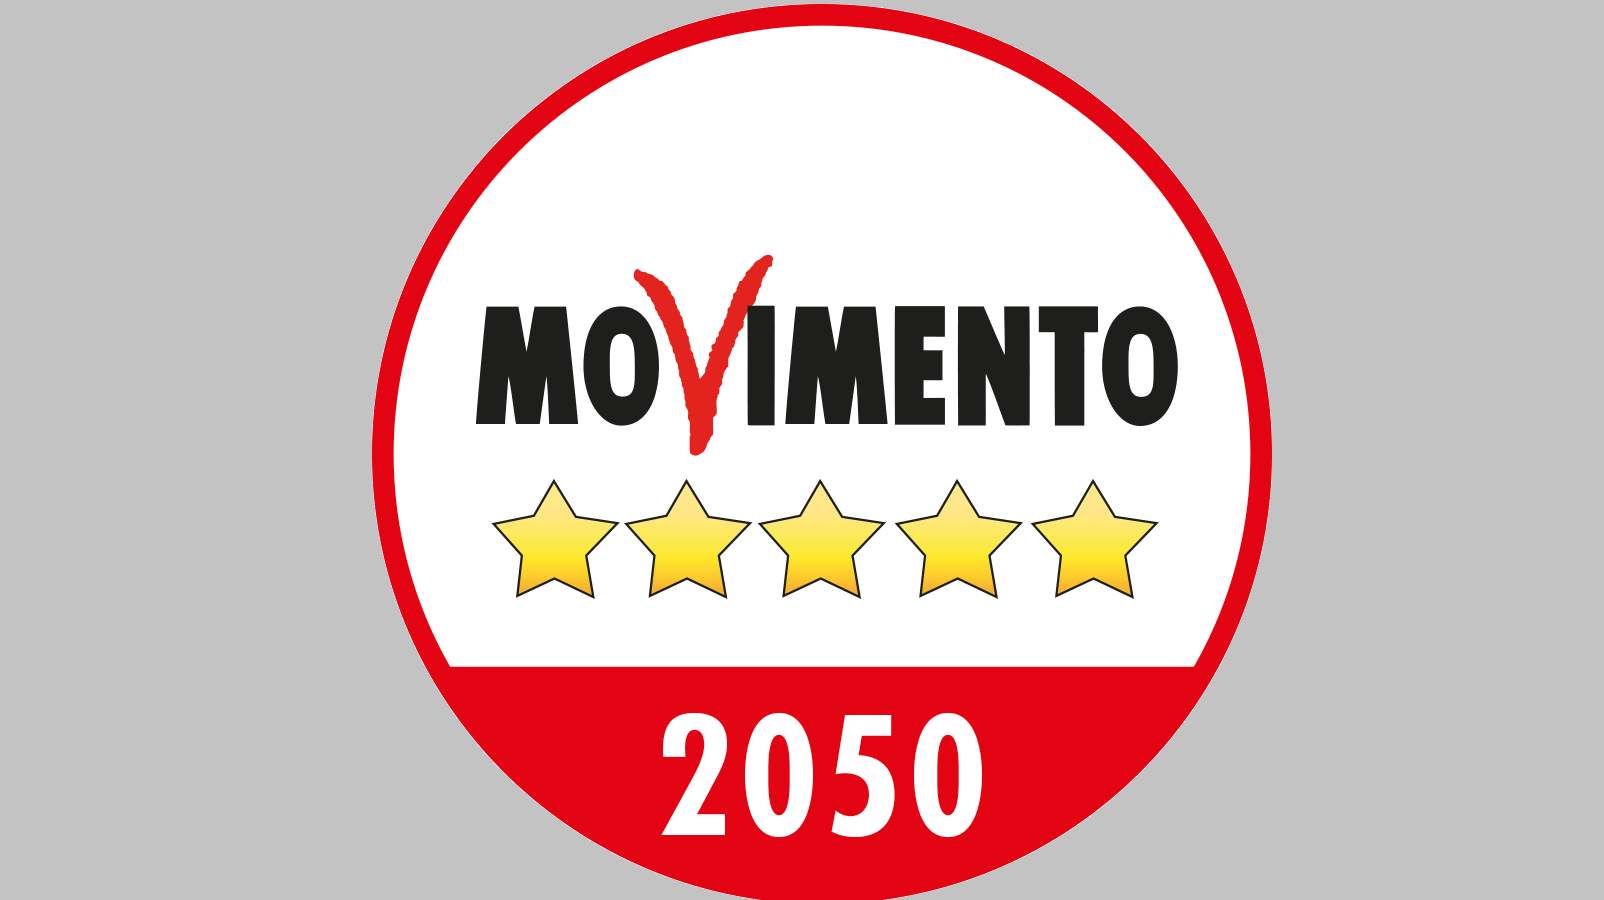 Логотип Движения пяти звезд на 2050 год, предложенный Джузеппе Конте в 2021 году